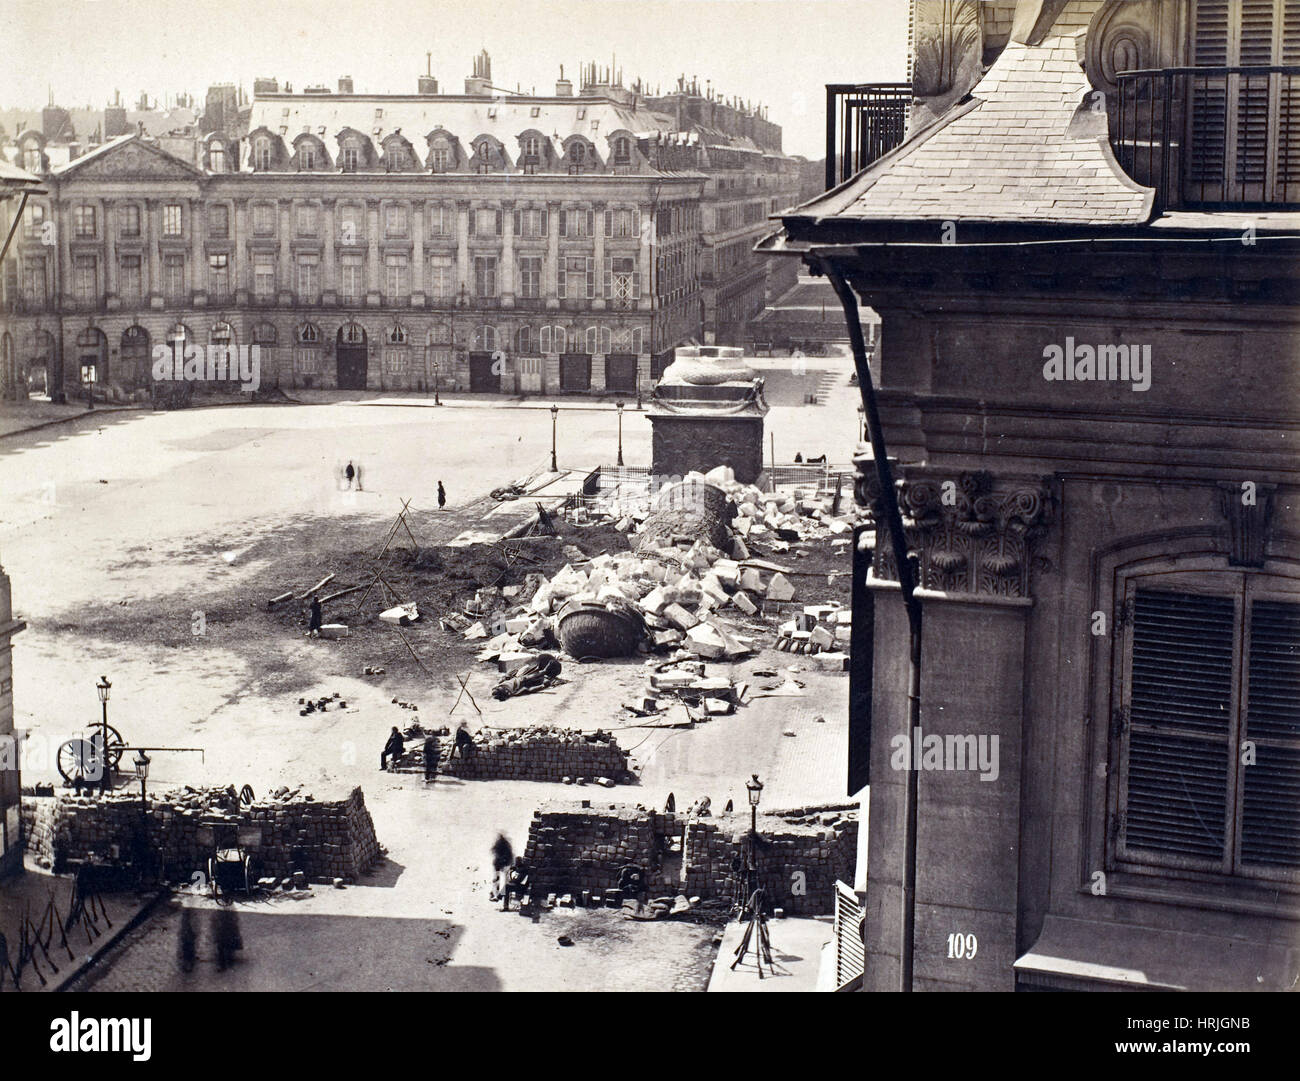 Paris Commune, Destroyed VendÌ«me Column, 1871 Stock Photo